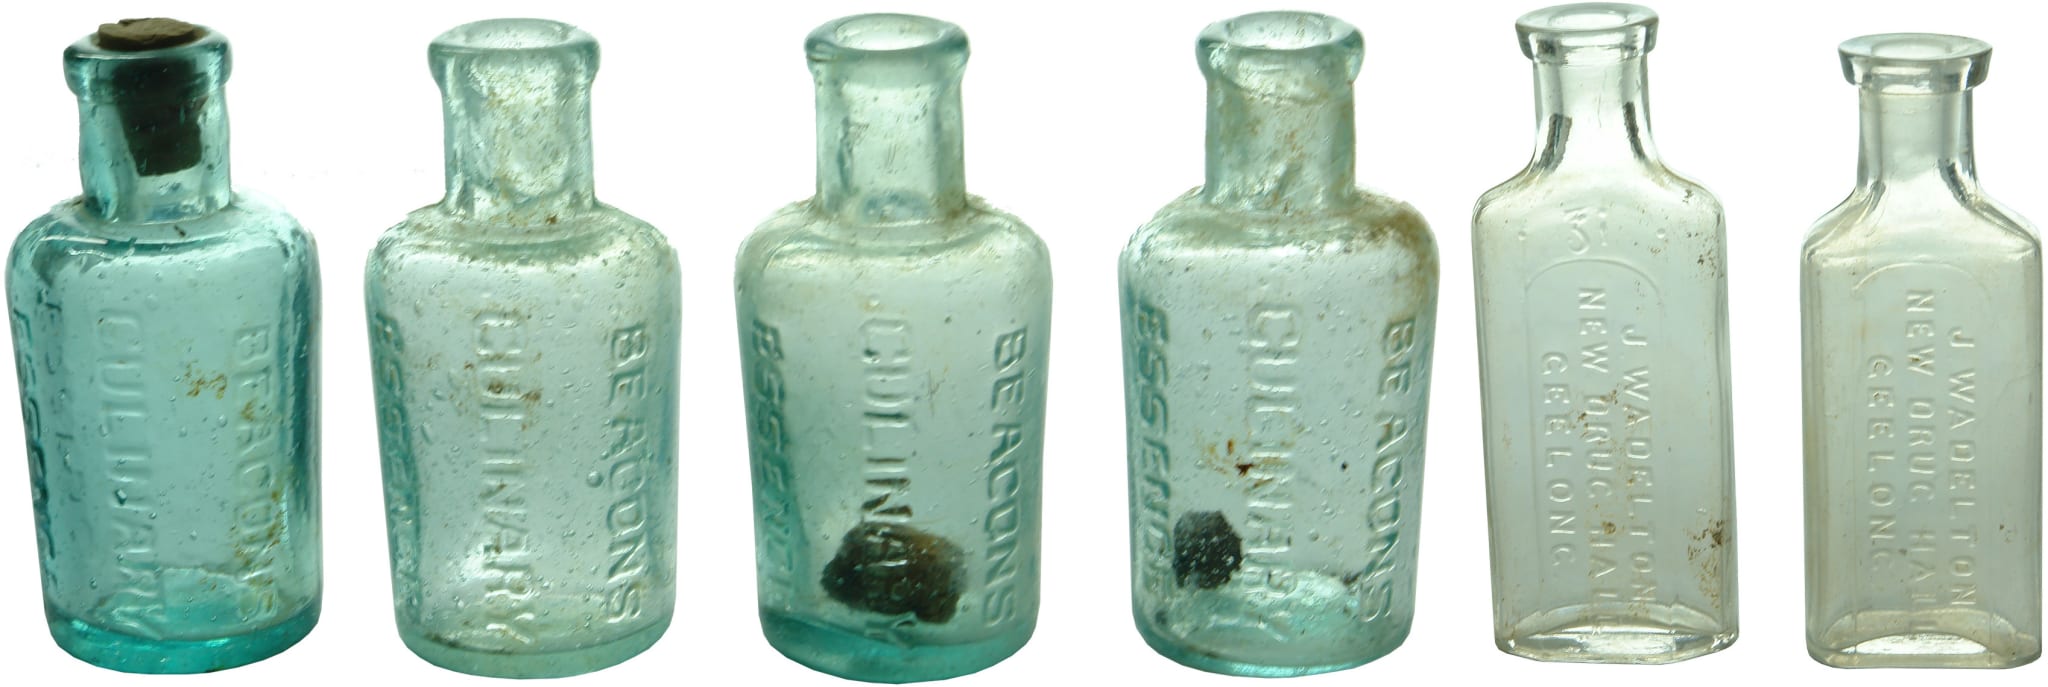 Antique Geelong Bottles